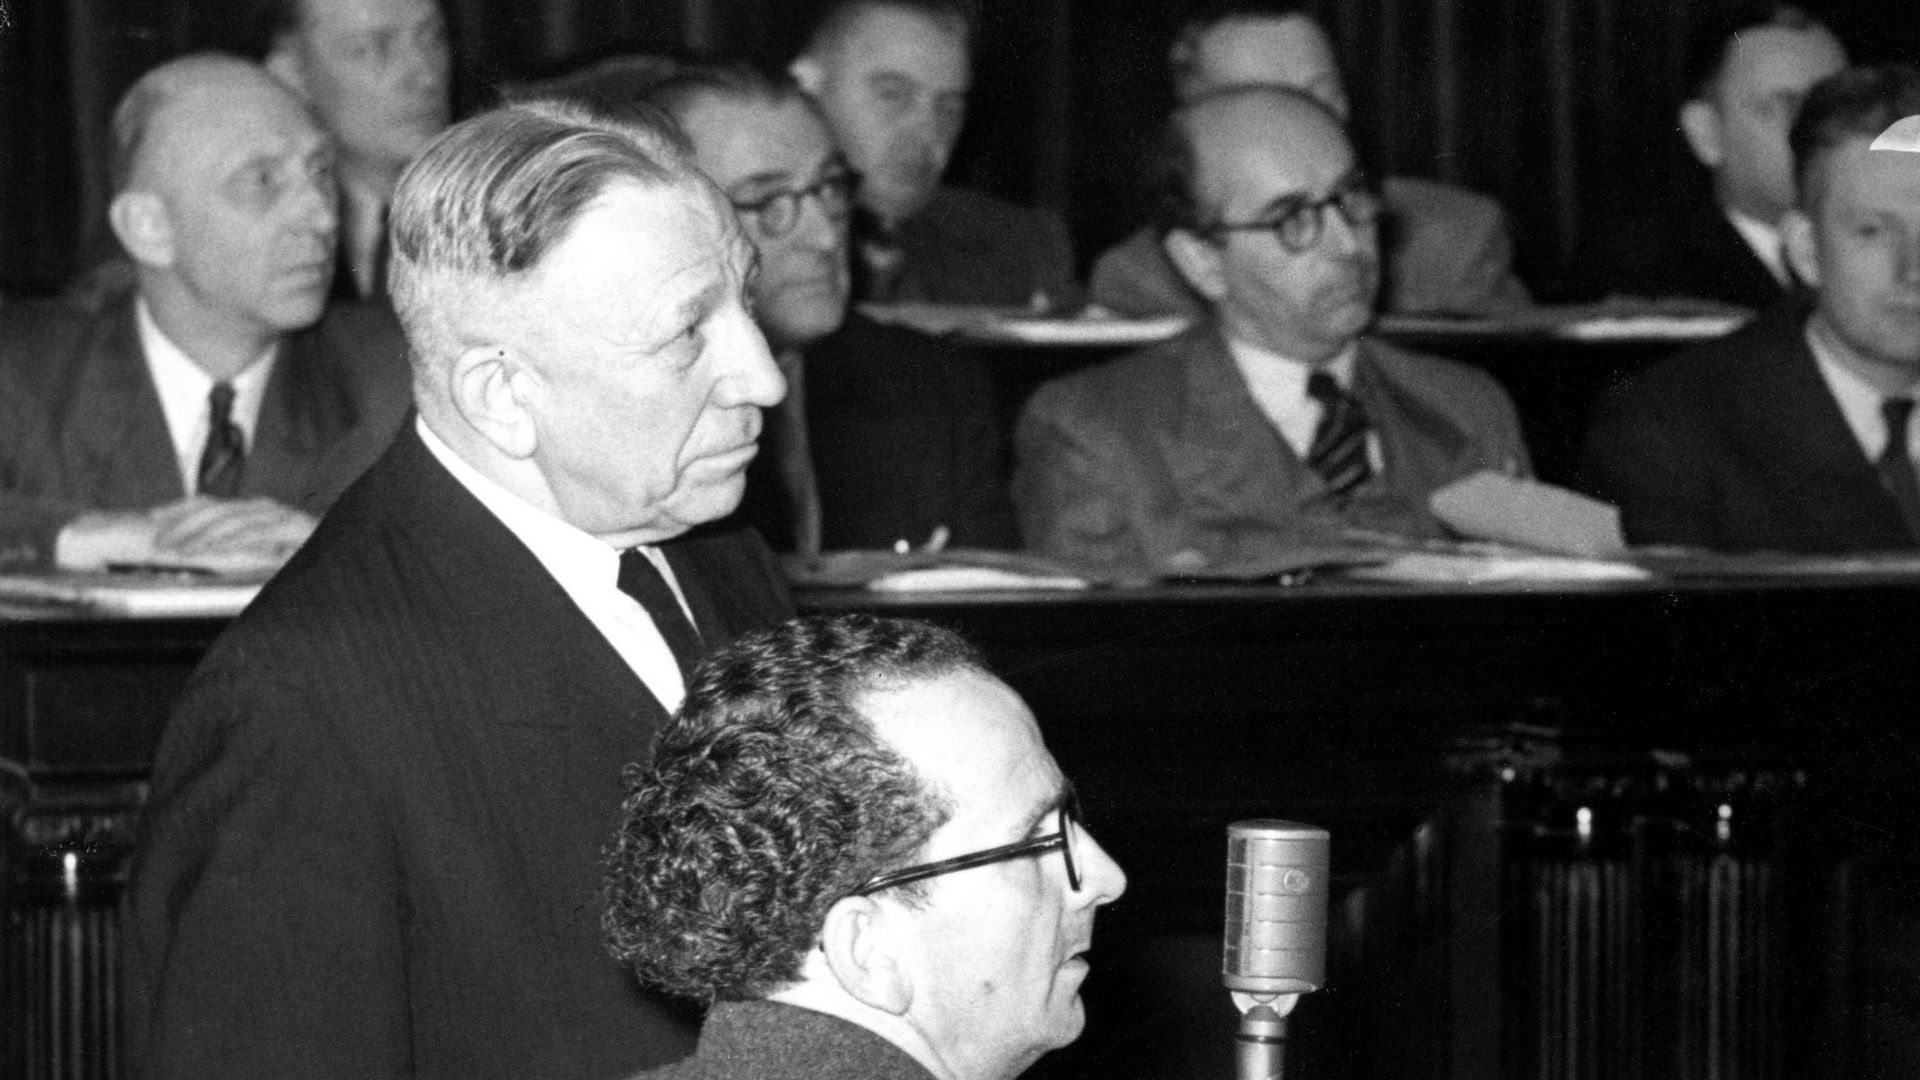 26 novembre 1951 : Mr Laurent, témoin au procès de Célestin Rinchard, le docteur mitraillette qui a commandité le meurtre de Camille Deberghe